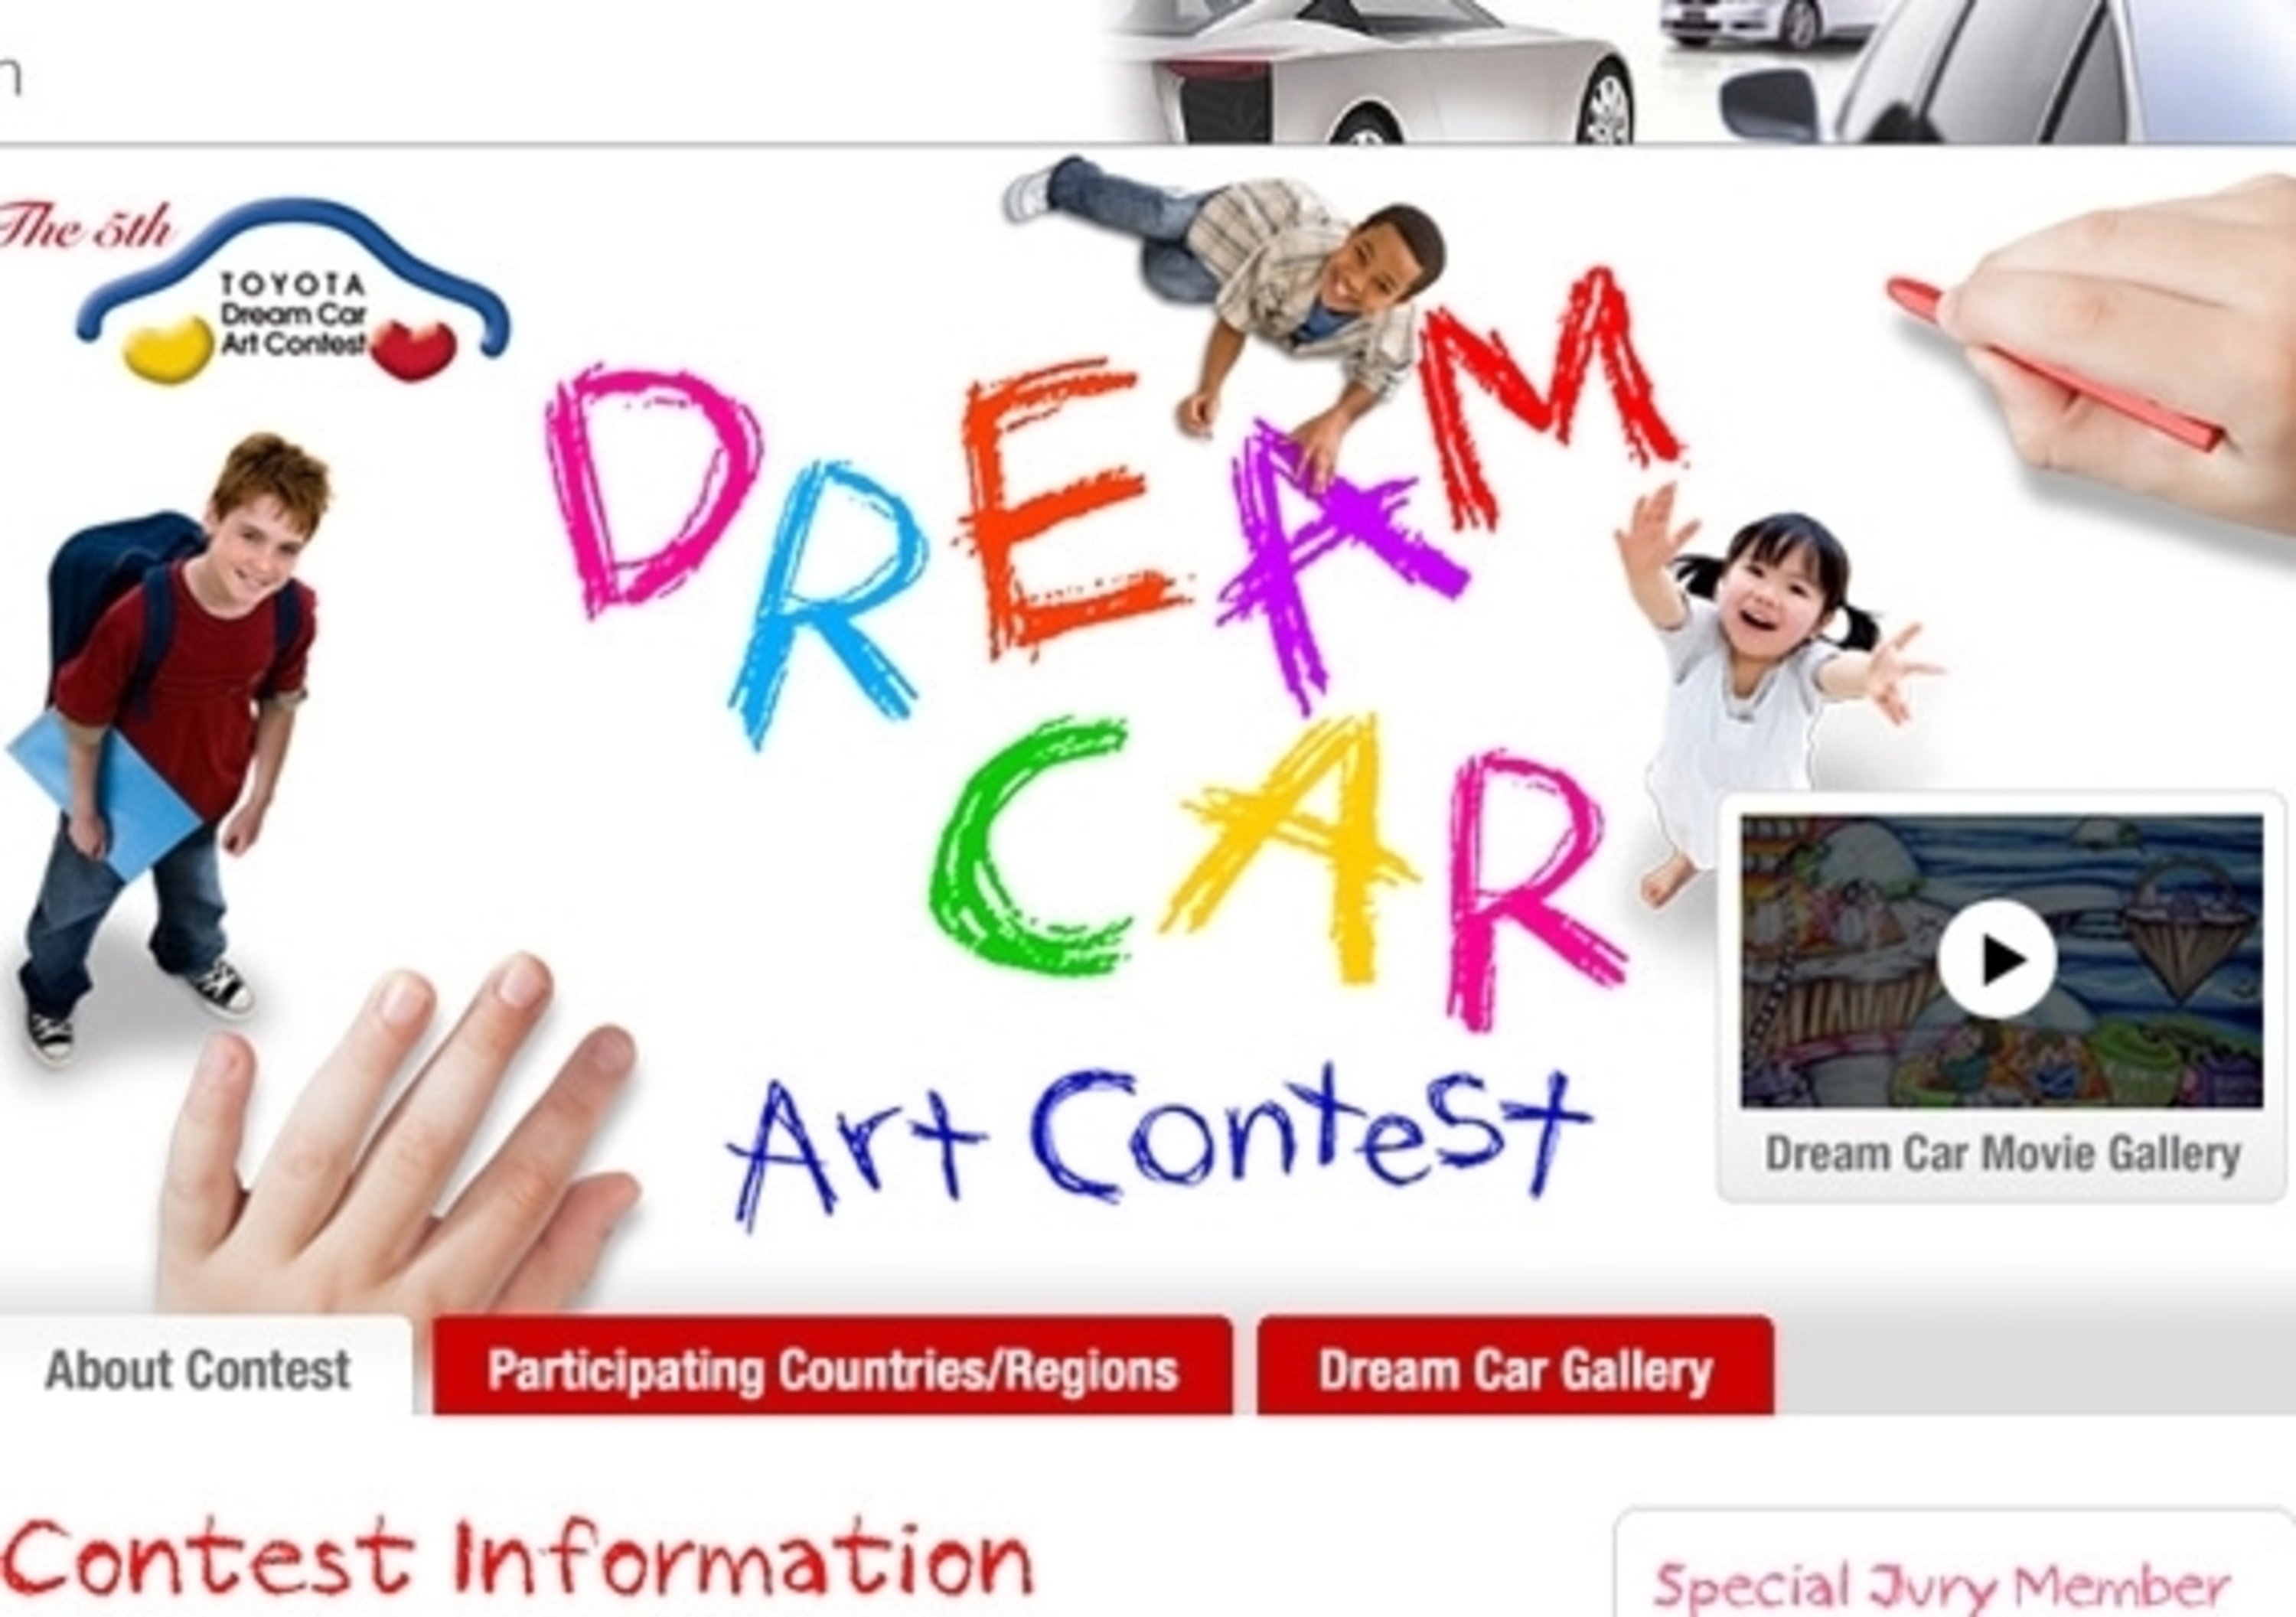 Al via il concorso Dream Car Art